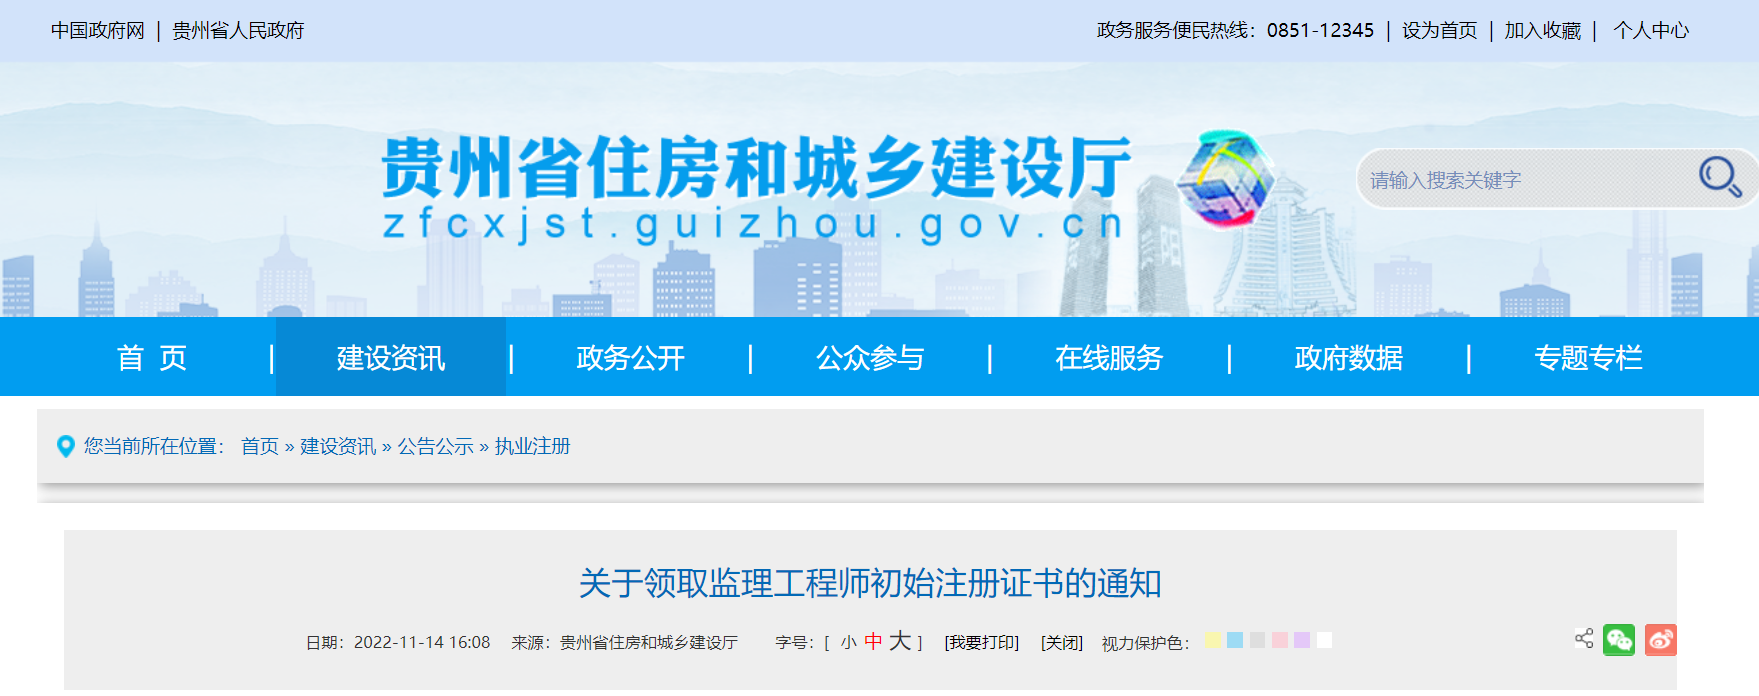 2022年贵州监理工程师初始注册证书领取通知（第20批）